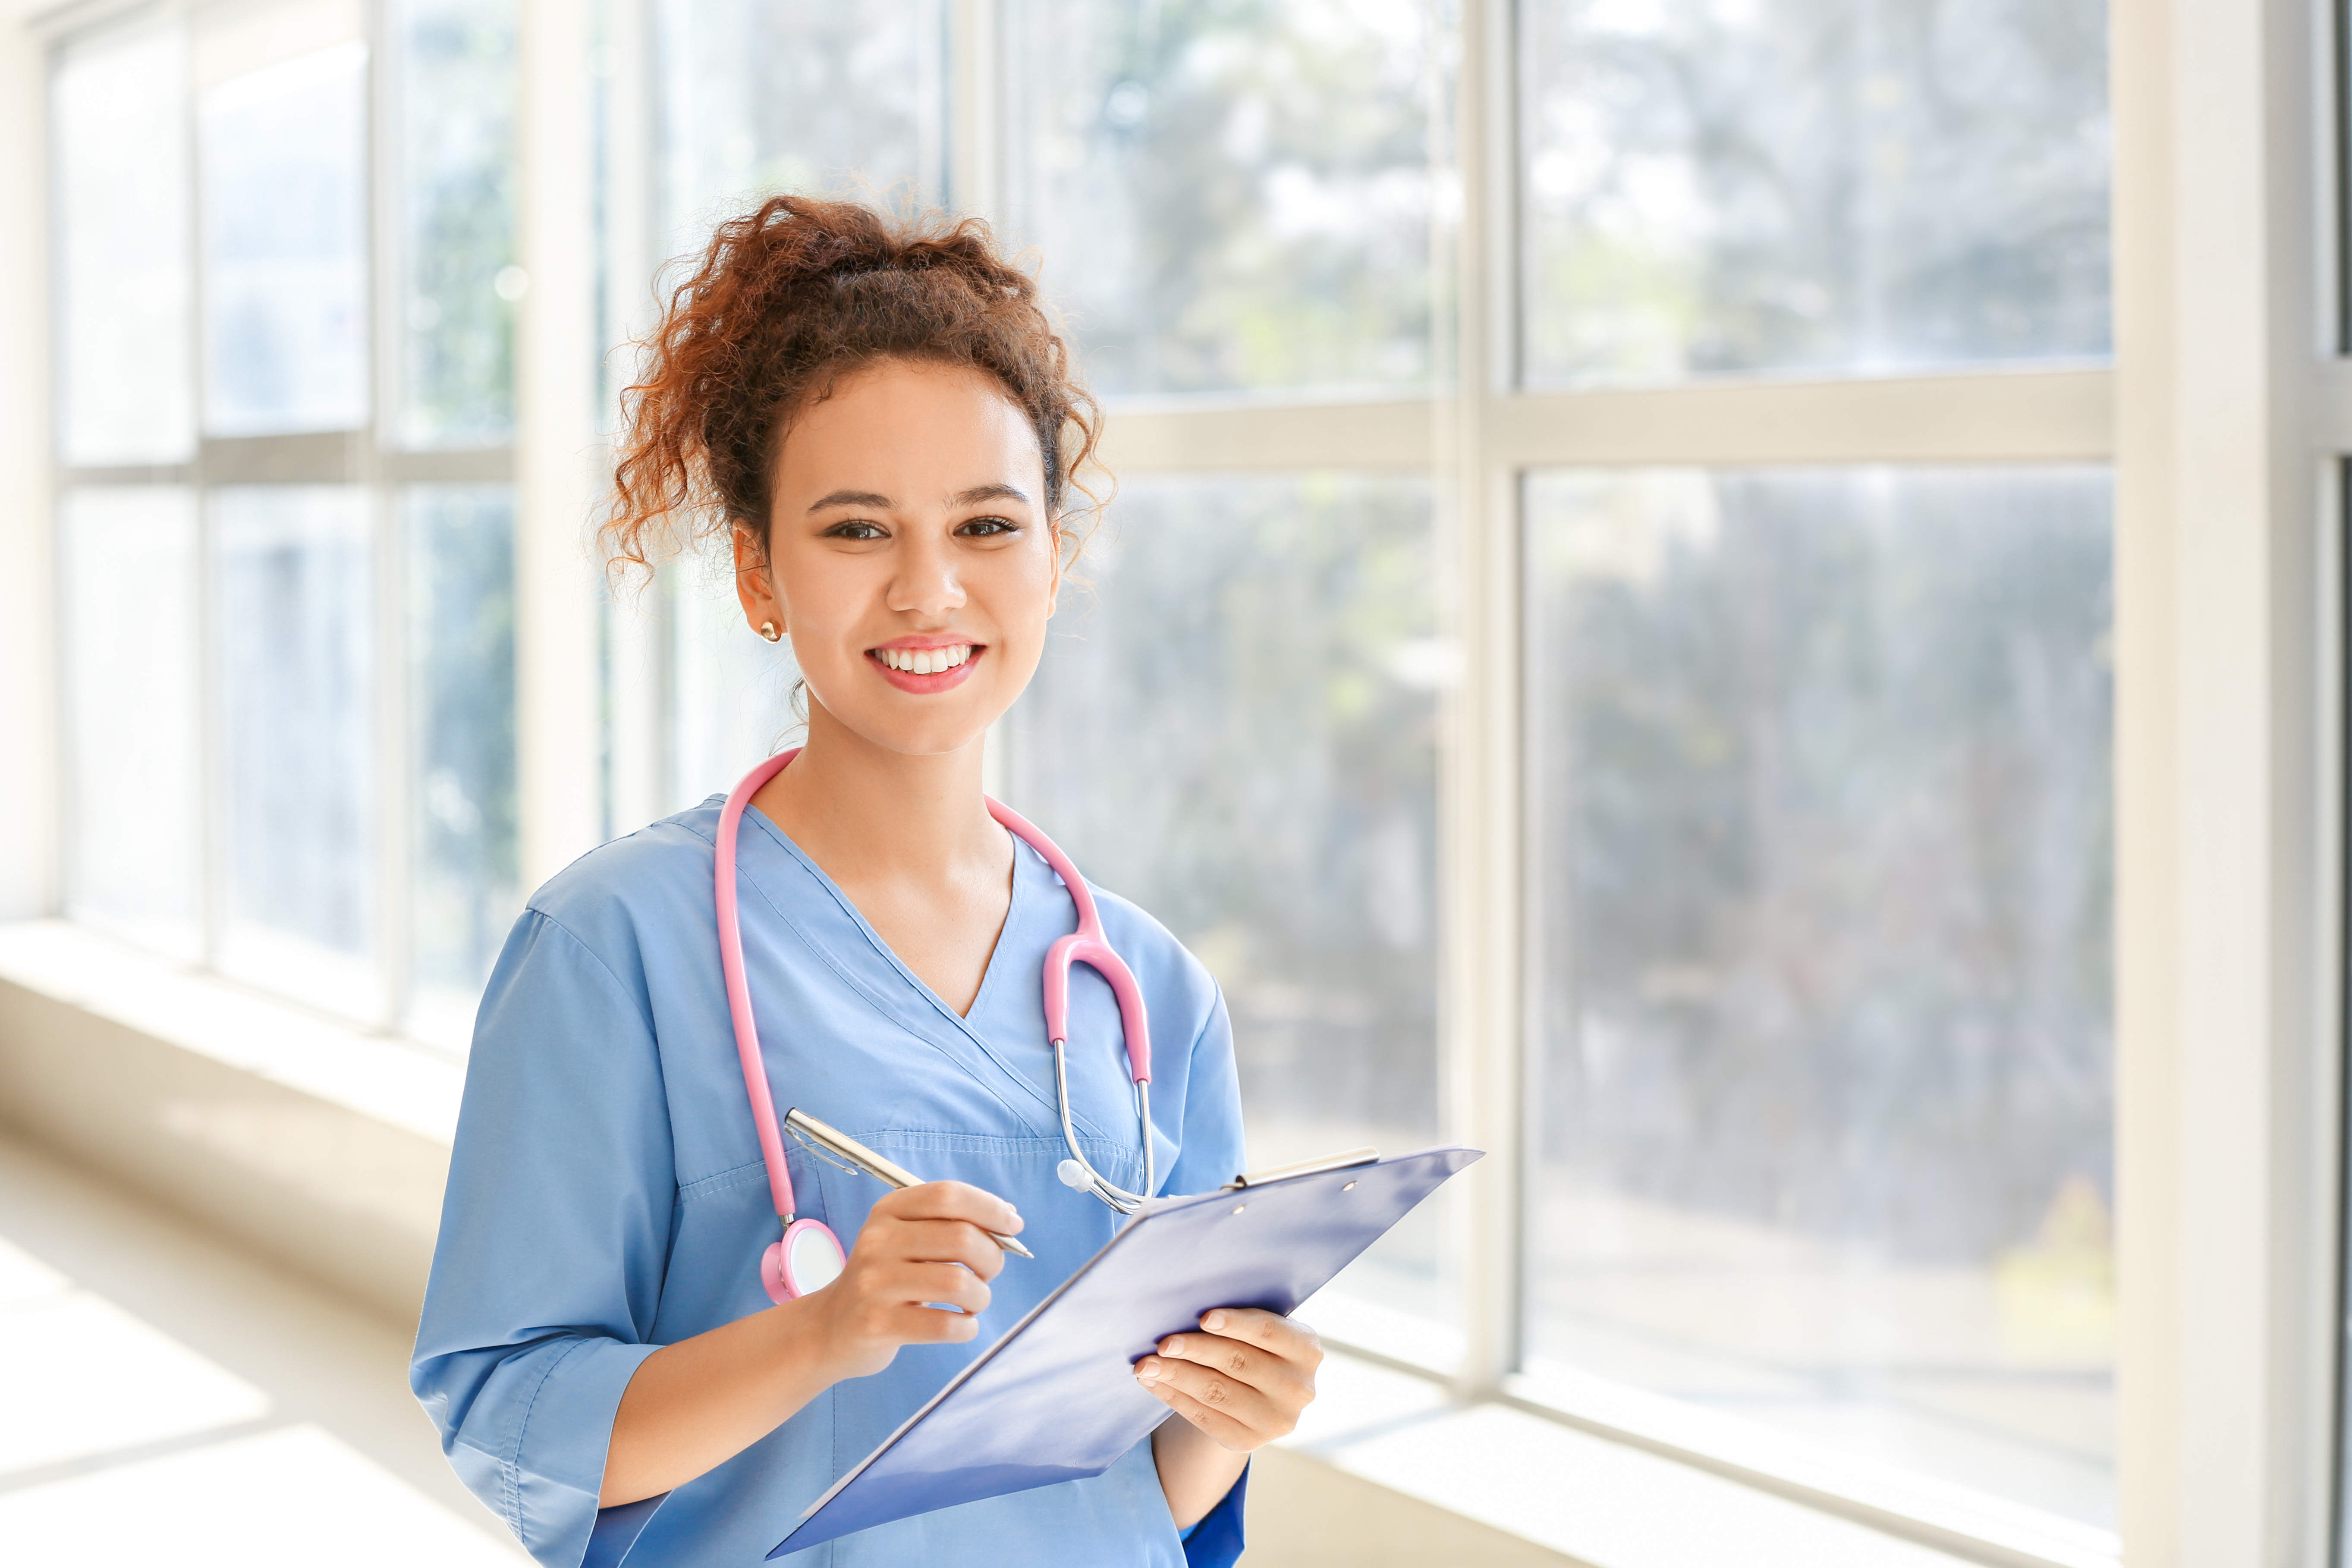 Eine junge Krankenschwester lächelt | Quelle: Shutterstock